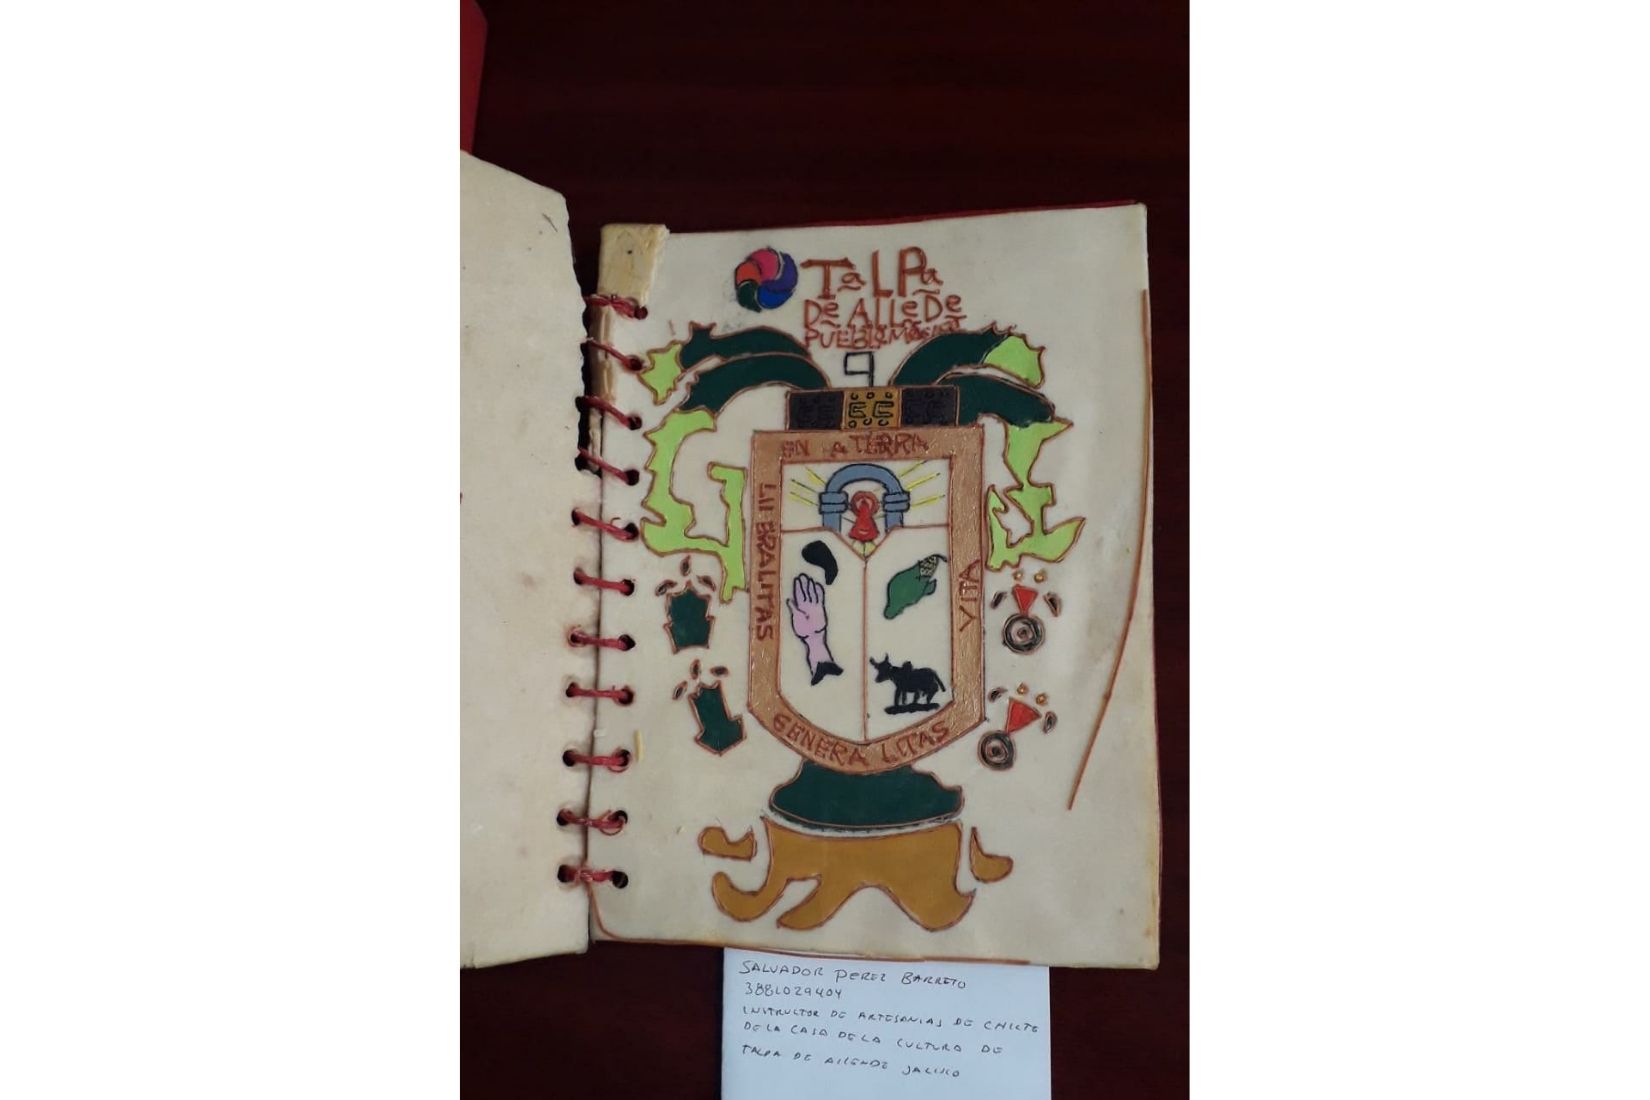 Portada de cuaderno decorado con chilte o chicle. Artesano Salvador Pérez Barreto. Talpa de Allende, Jal. Col. AmigosMAP. (Foto: Irma Delgado).